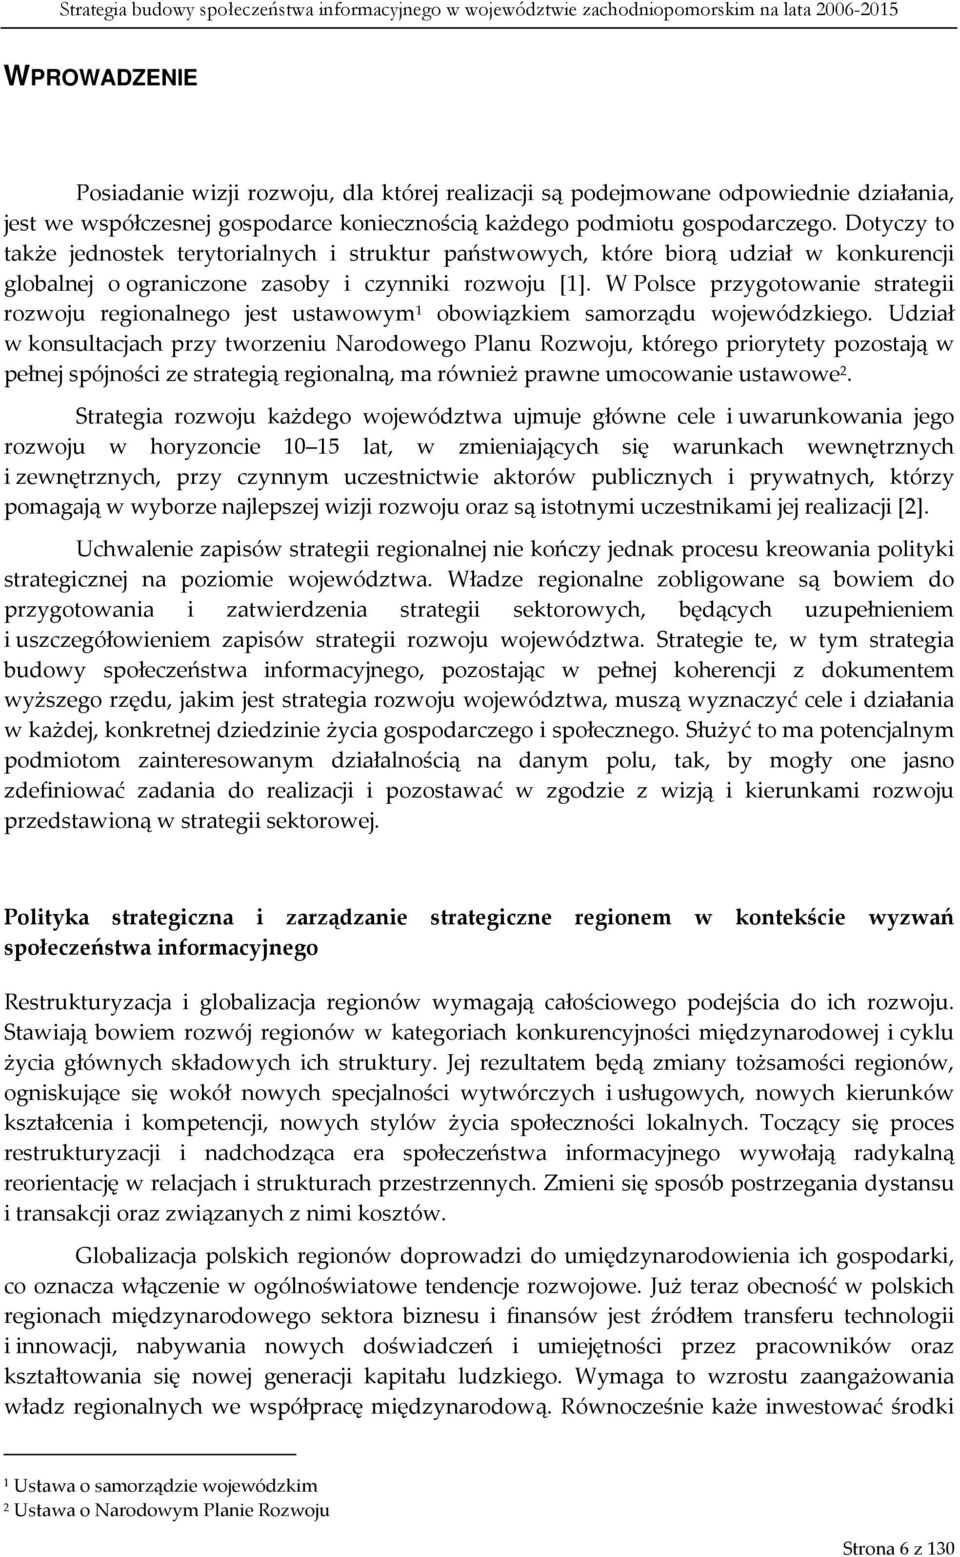 W Polsce przygotowanie strategii rozwoju regionalnego jest ustawowym 1 obowiązkiem samorządu wojewódzkiego.